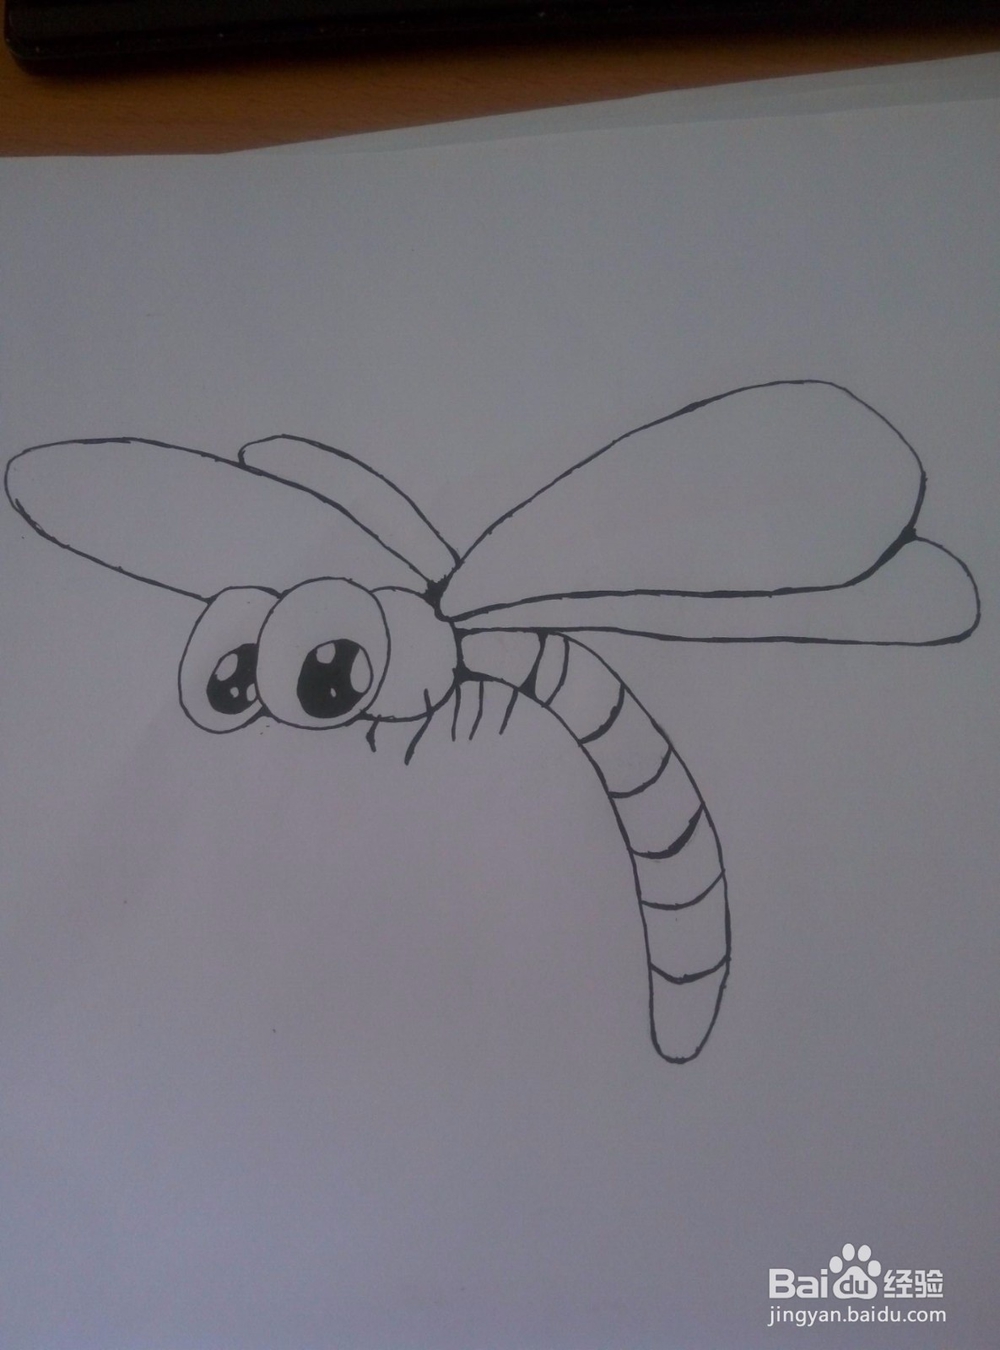 <b>如何快速画一只蜻蜓</b>